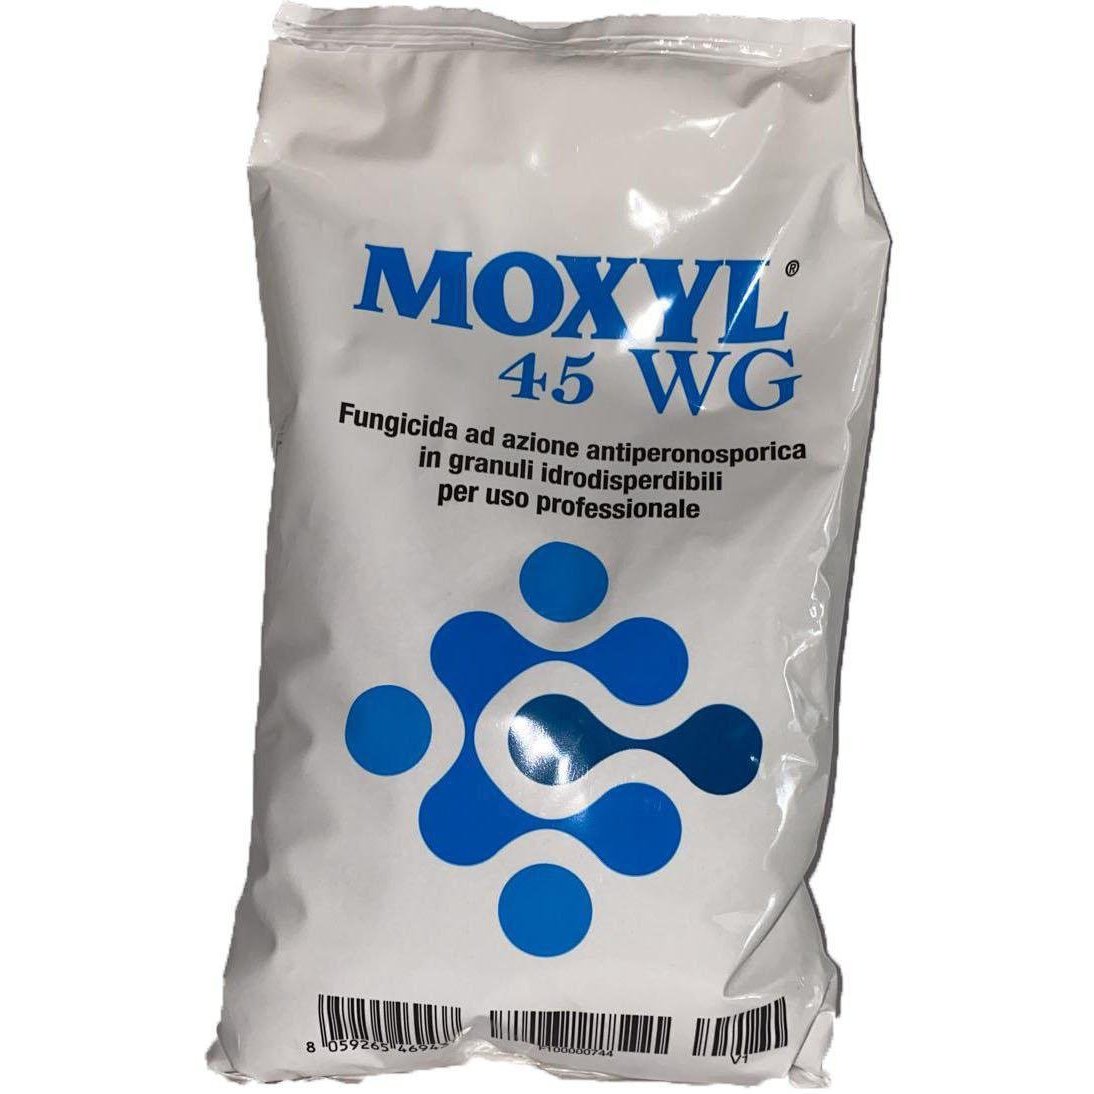 MOXYL 45 WG - fungicida ad azione antiperonosporica in granuli idrodispersibili per uso professionale-Farmagrishop.it